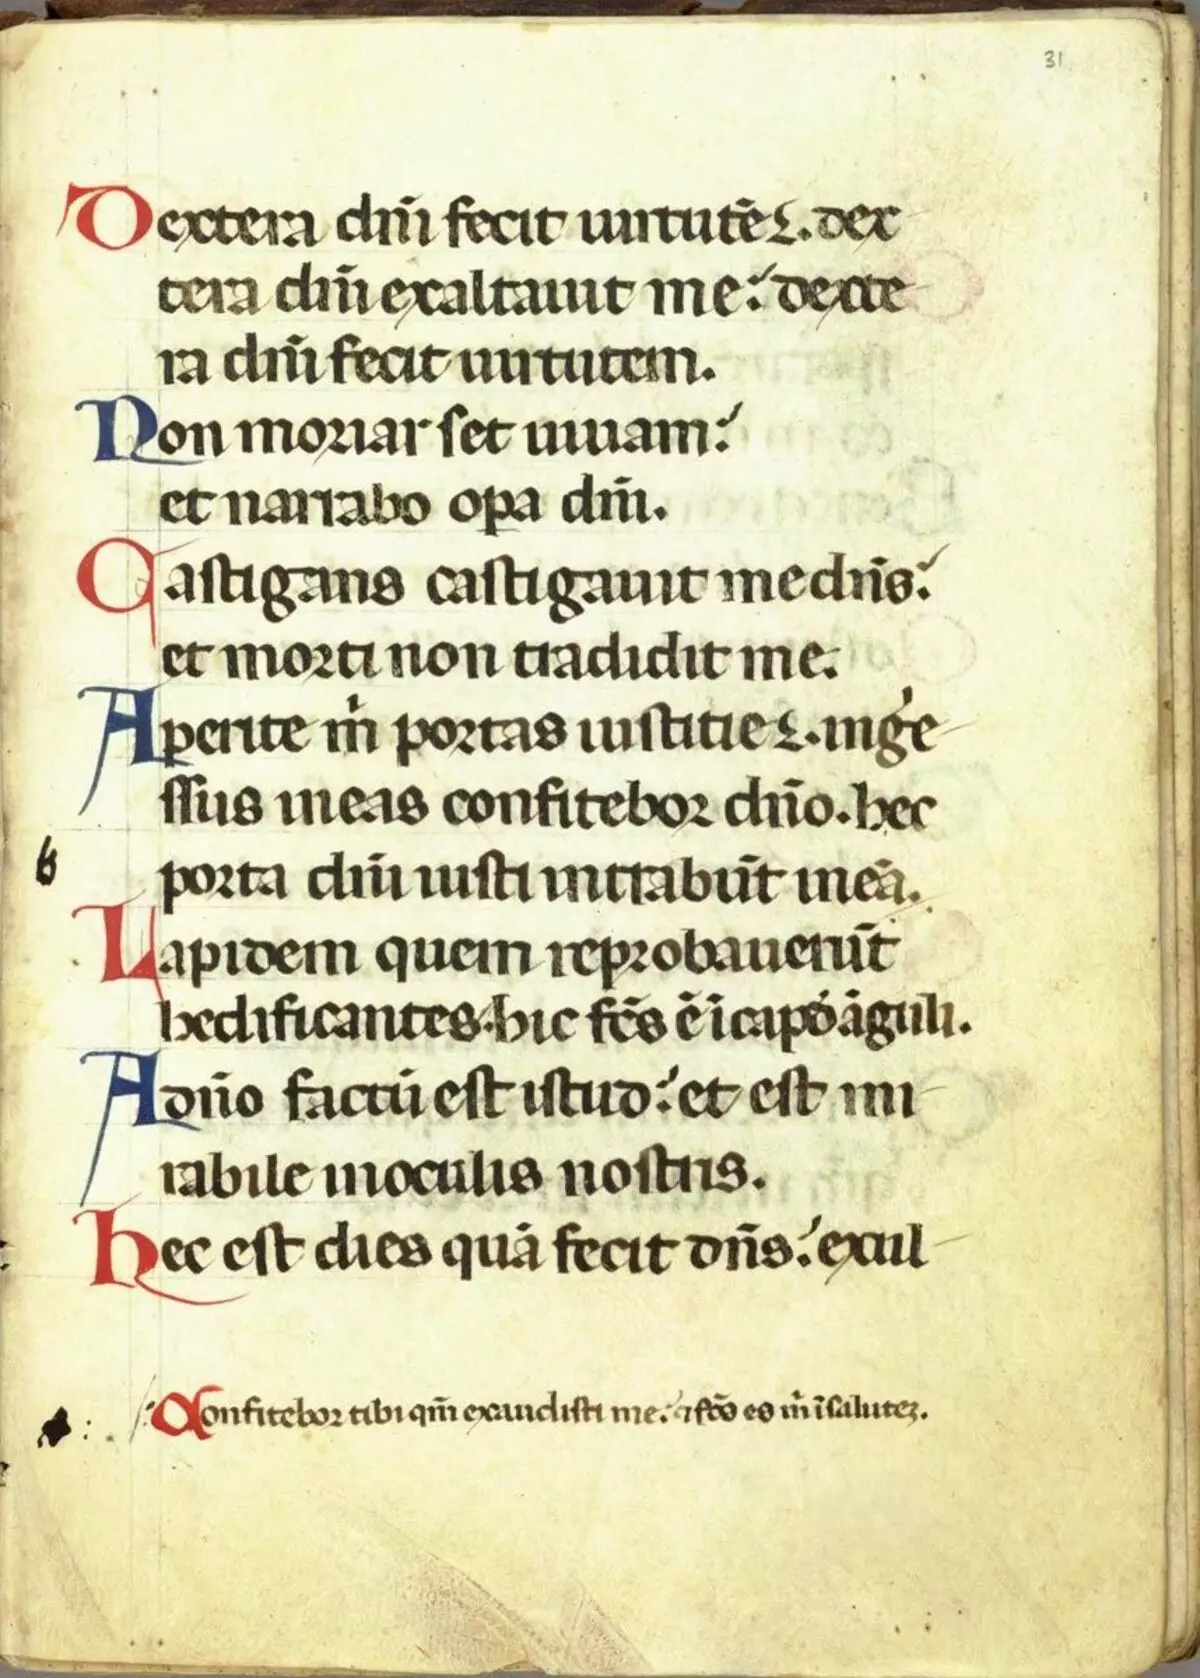 I-Gothic Calligraphy: Izici zefonti ye-calligraphic ngesitayela se-gothic, umlando 19178_9